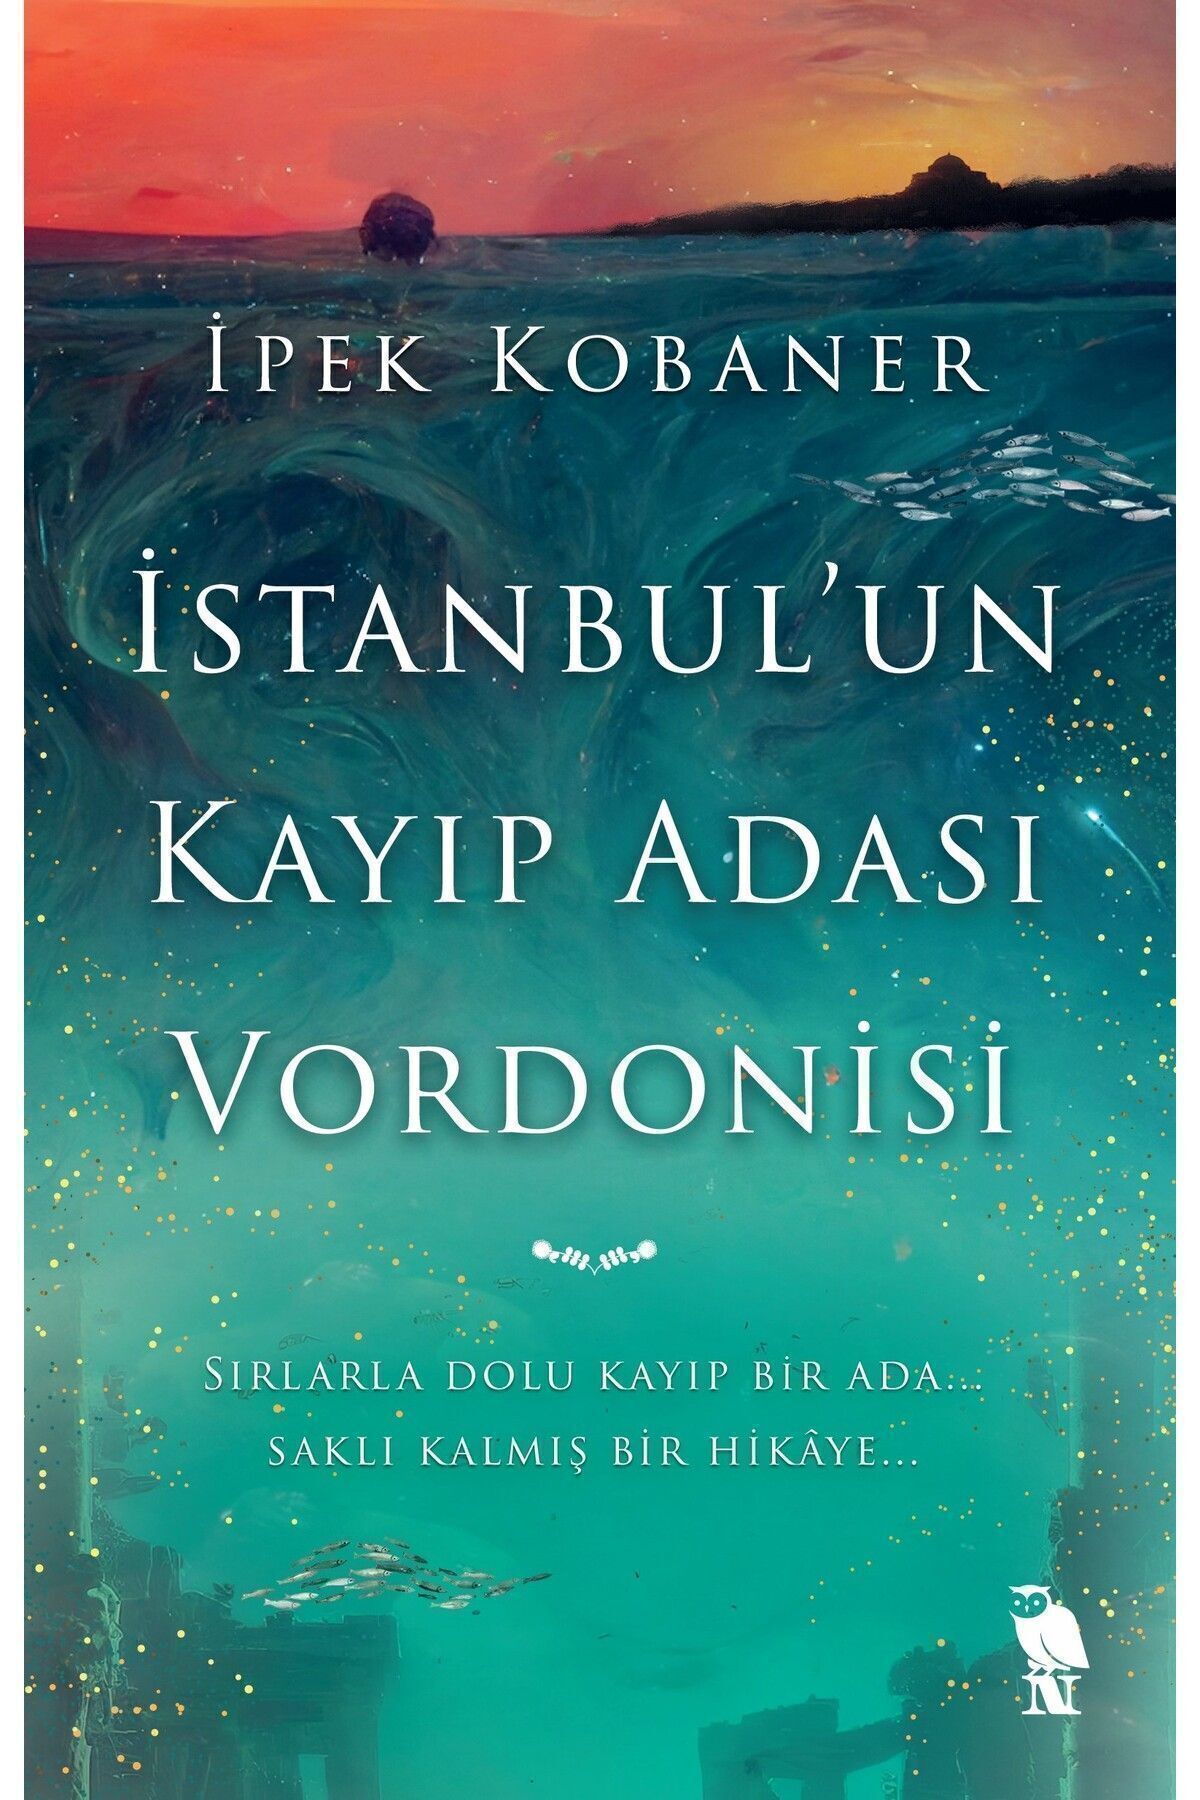 Nemesis Kitap İstanbul'un Kayıp Adası Vordonisi - İpek Kobaner